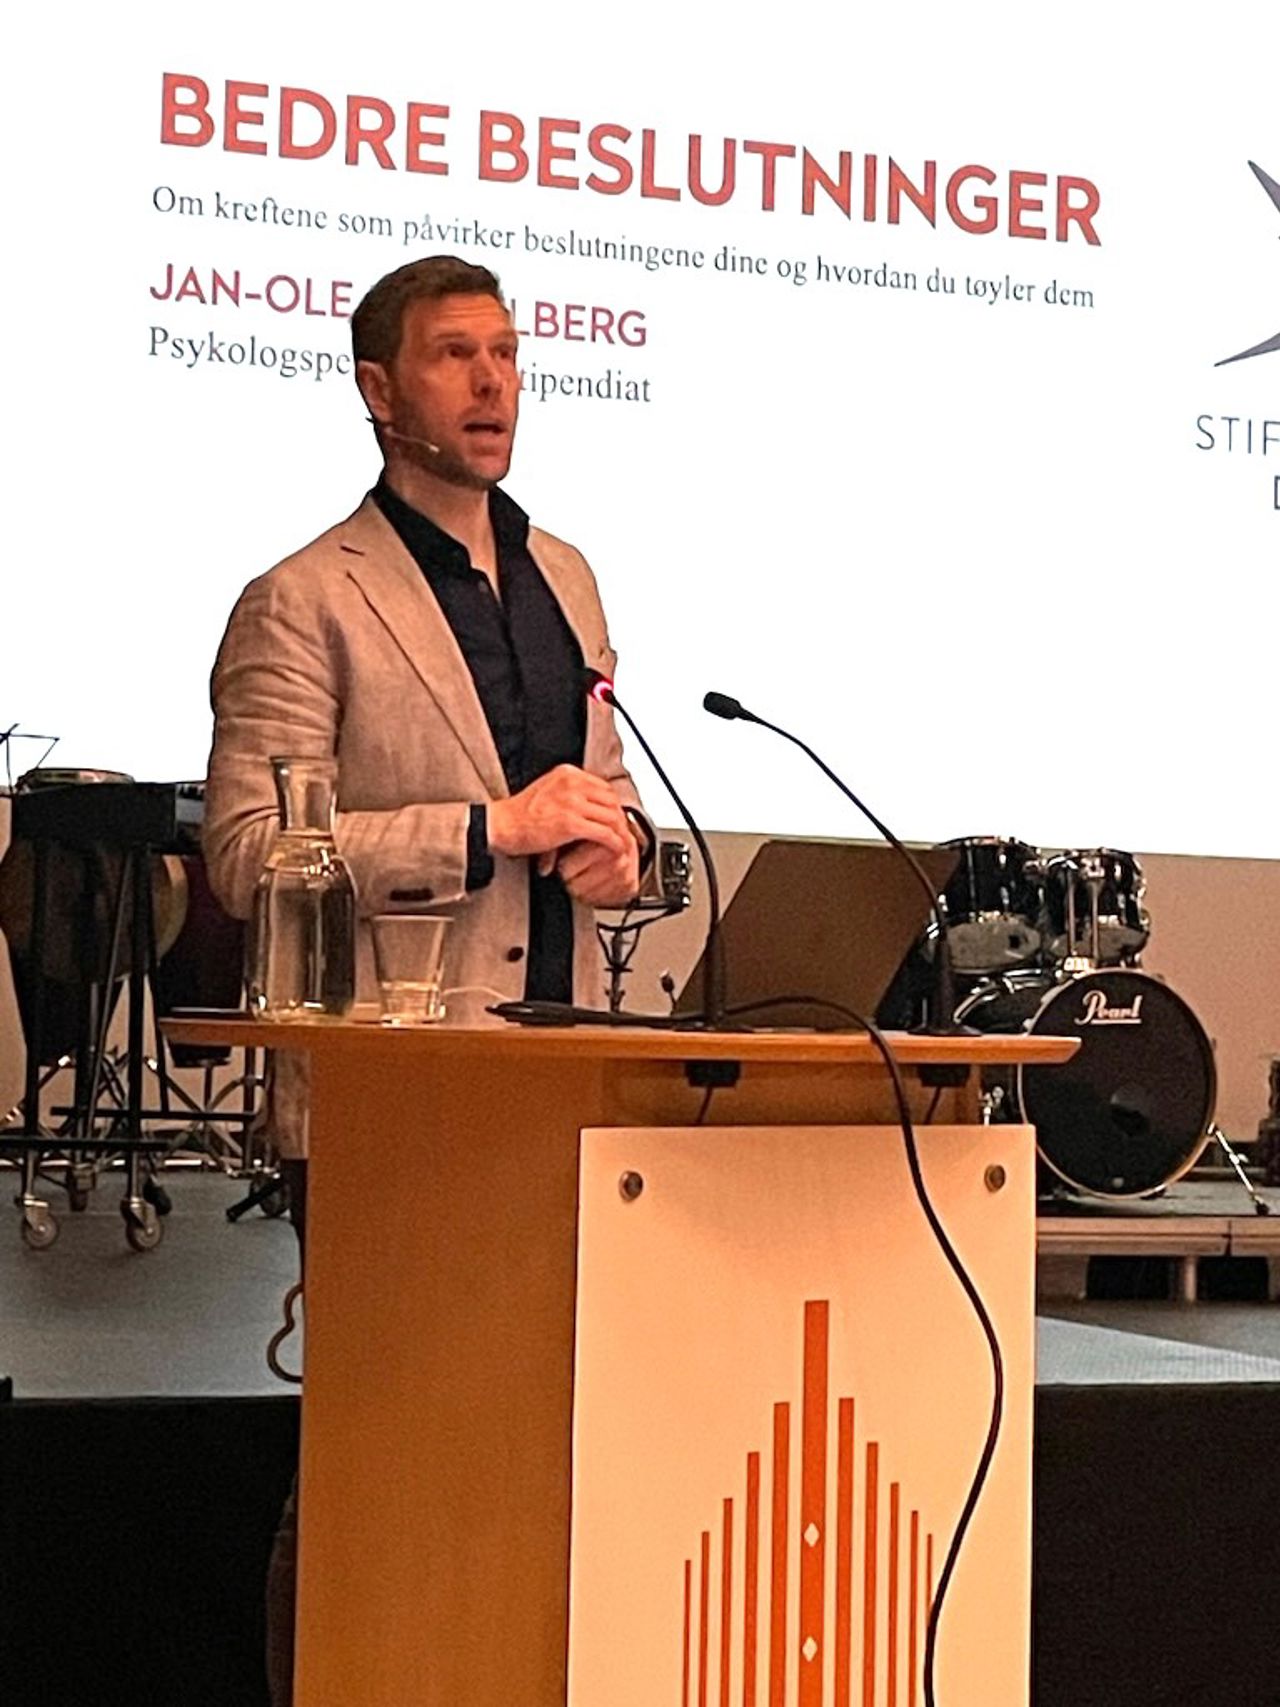 Føredragshaldar Jan-Ove Hesselberg står på ein talerstol og snakker til salen. I bakgrunnen står det skrive "bedre beslutninger."